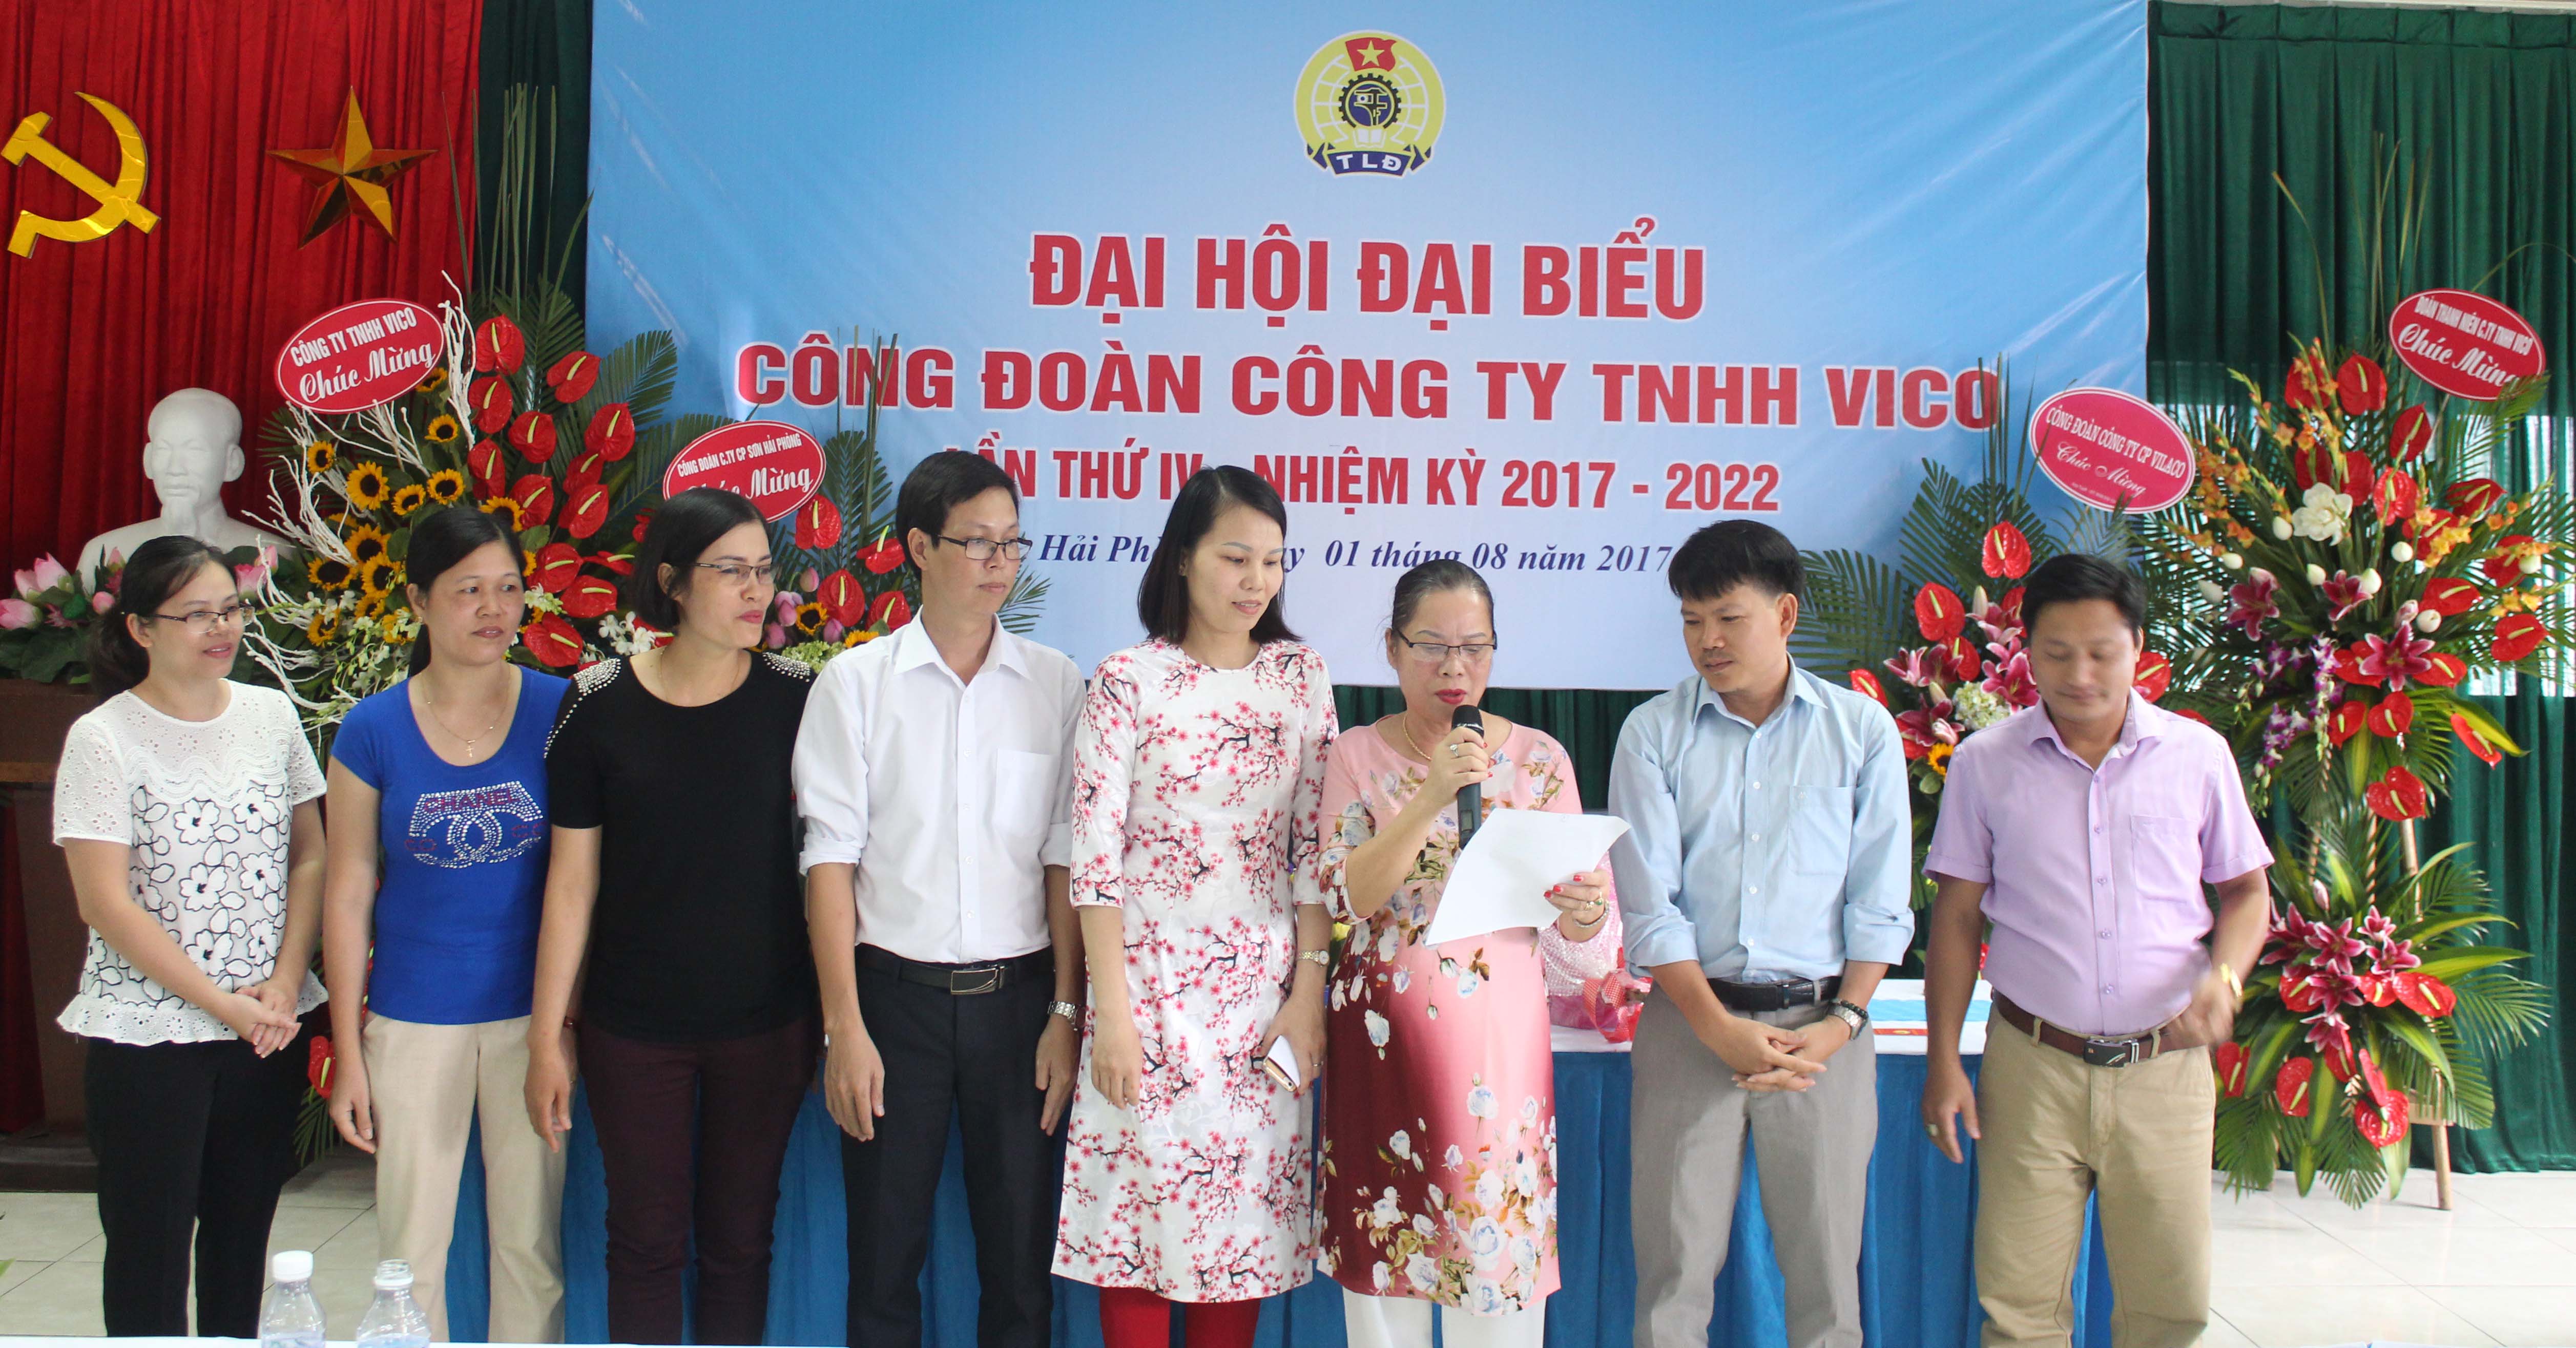 Đại hội đại biểu công đoàn Công ty TNHH VICO lần thứ IV nhiệm kì 2017-2022